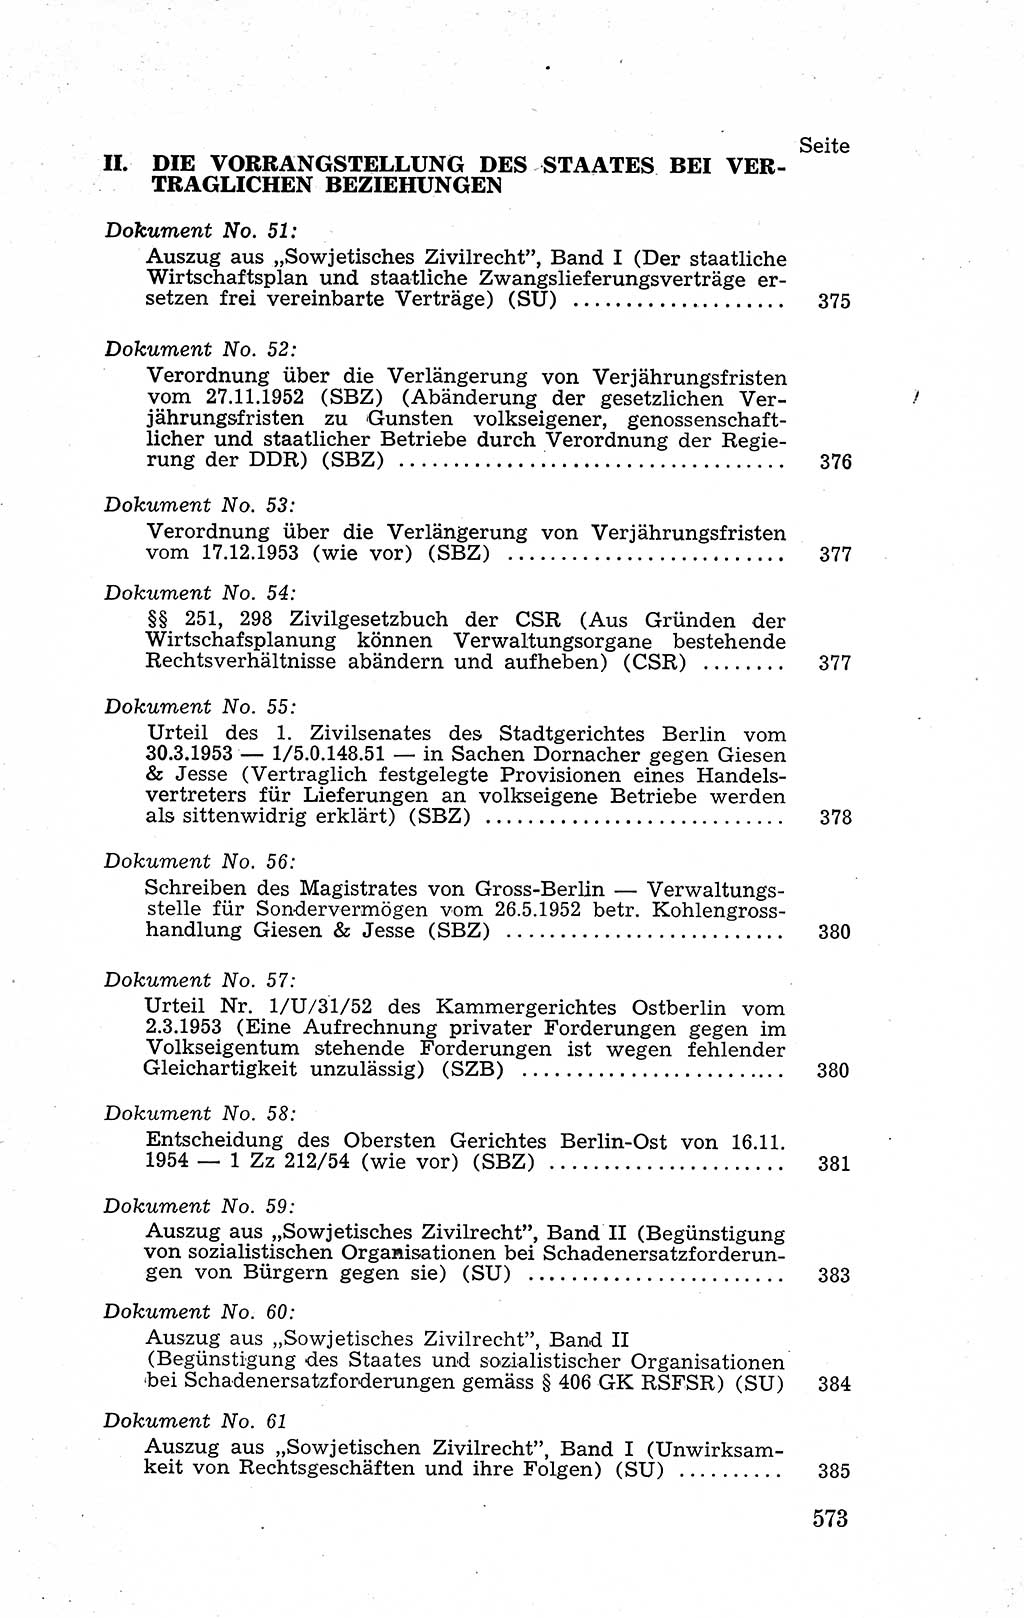 Recht in Fesseln, Dokumente, Internationale Juristen-Kommission [Bundesrepublik Deutschland (BRD)] 1955, Seite 573 (R. Dok. IJK BRD 1955, S. 573)